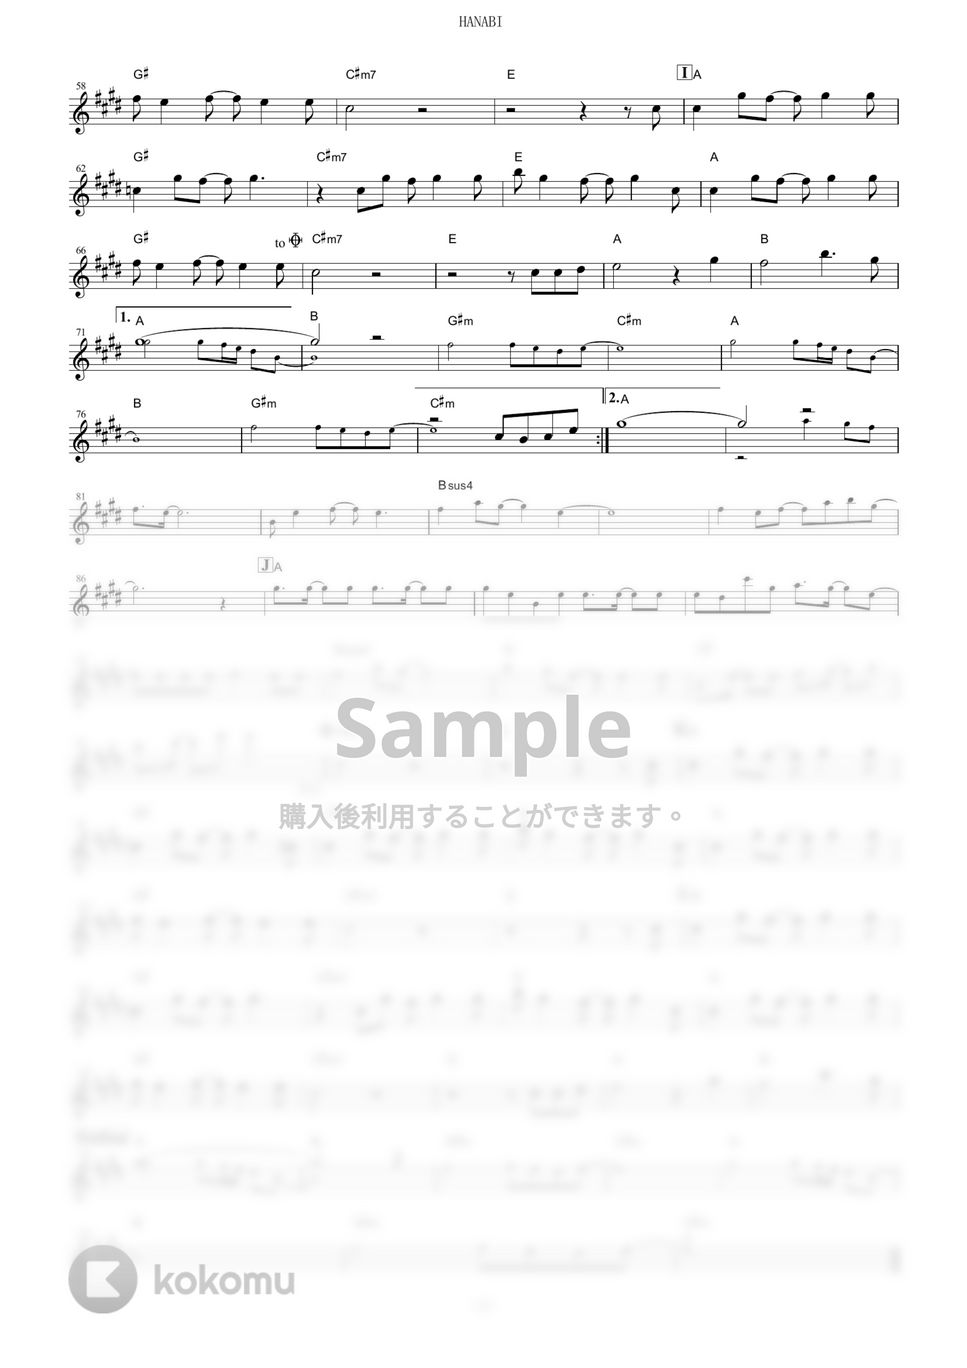 いきものがかり - HANABI (『BLEACH』 / in Eb) by muta-sax